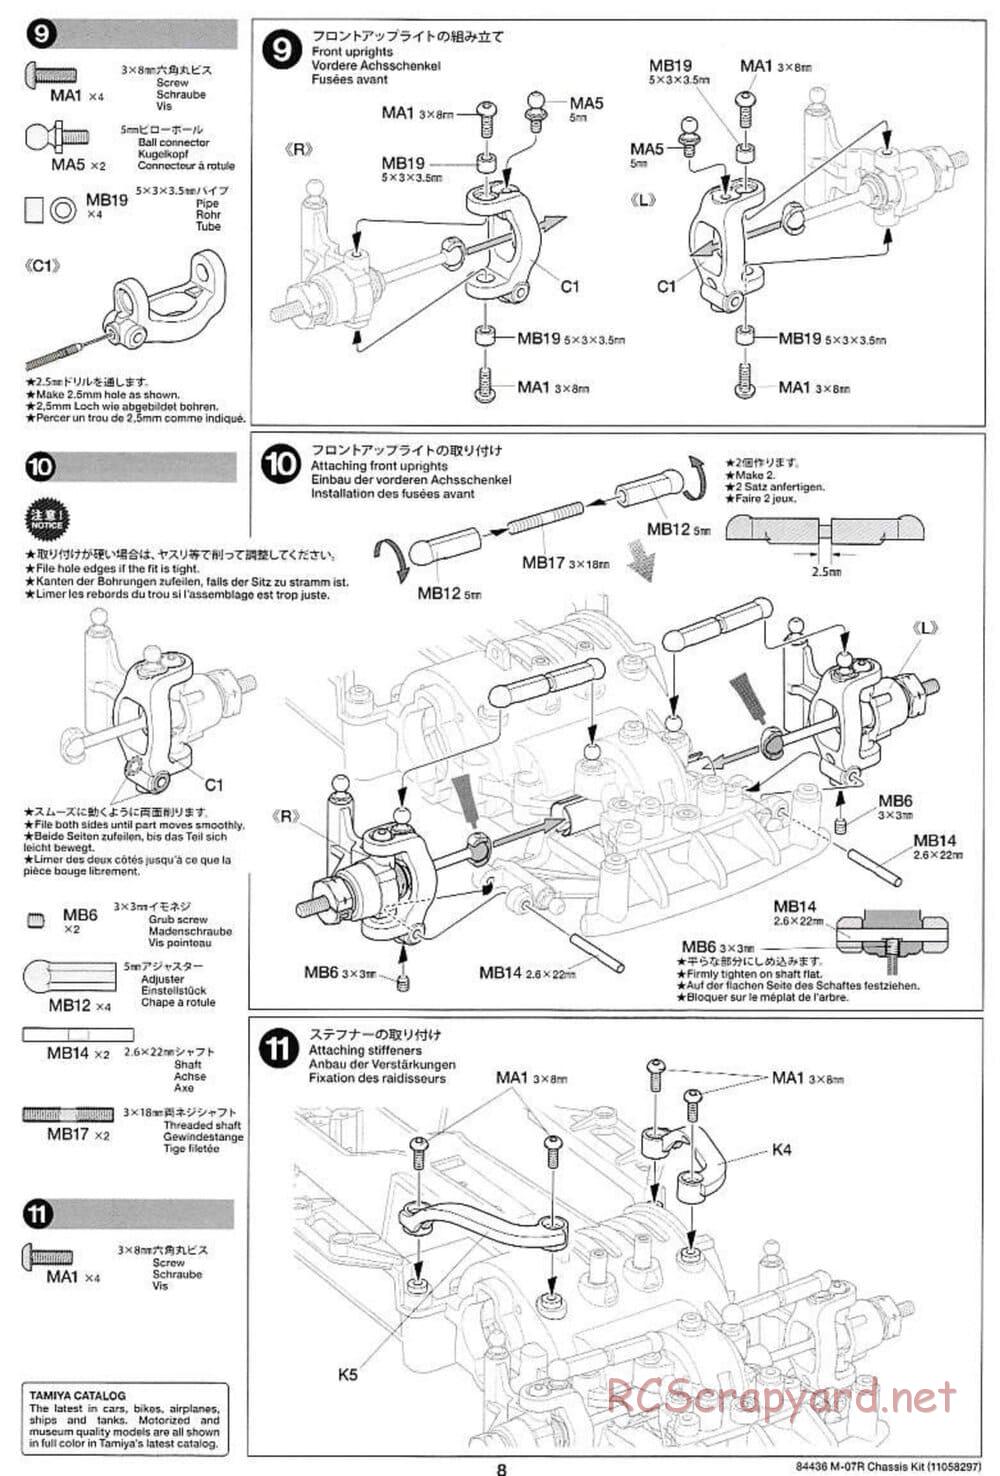 Tamiya - M-07R Chassis - Manual - Page 8